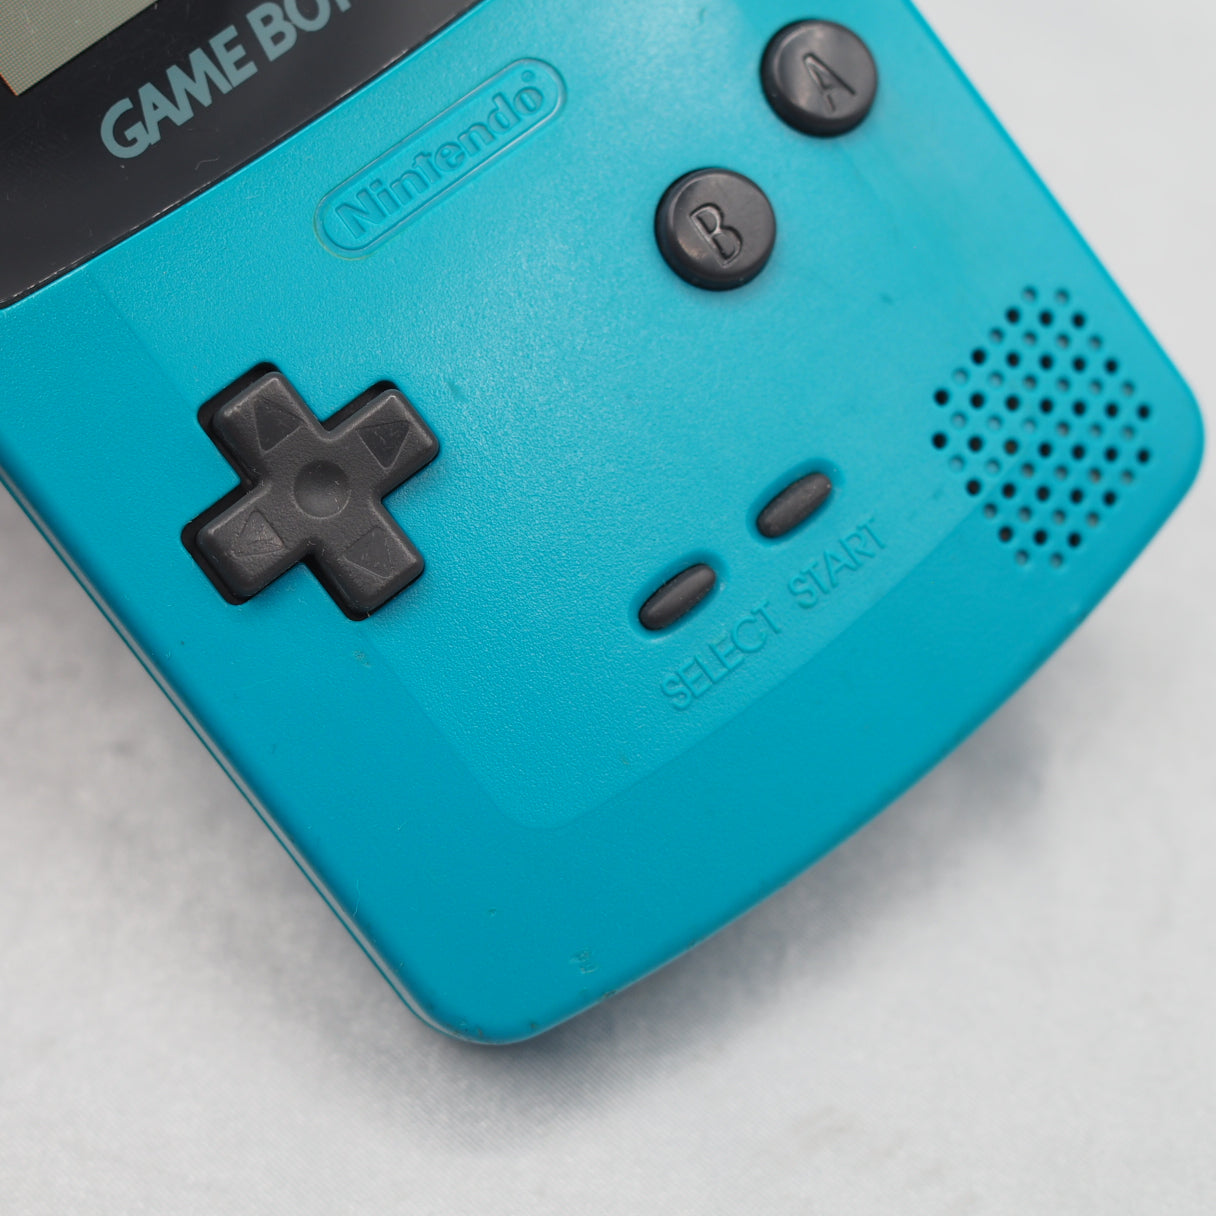 Nintendo GAMEBOY COLOR Console CGB-001 [Blue]